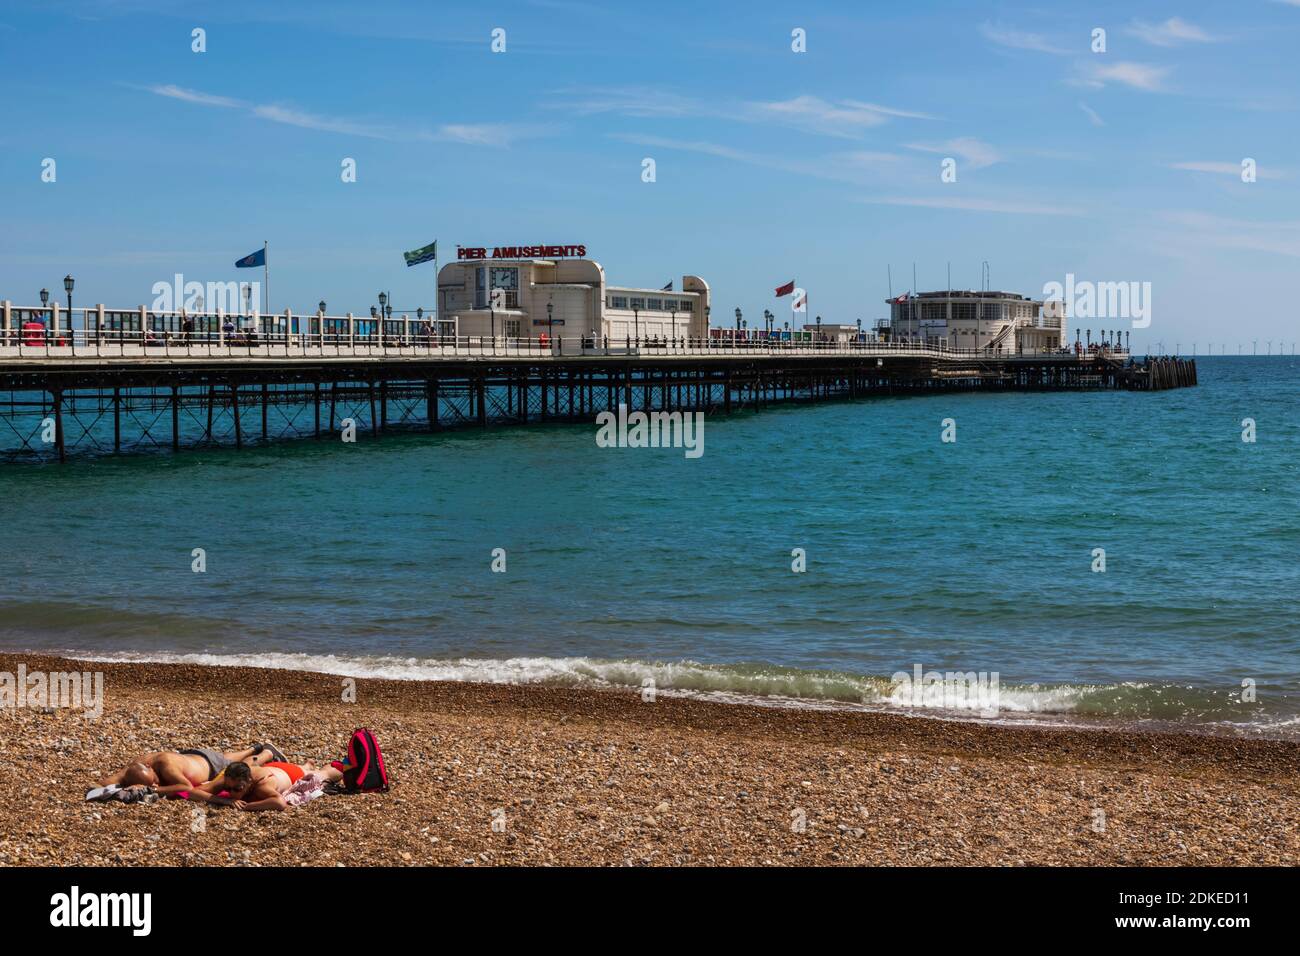 Inglaterra, West Sussex, Worthing, Worthing Beach, Pareja tomando el sol en la playa con Pier en el fondo Foto de stock